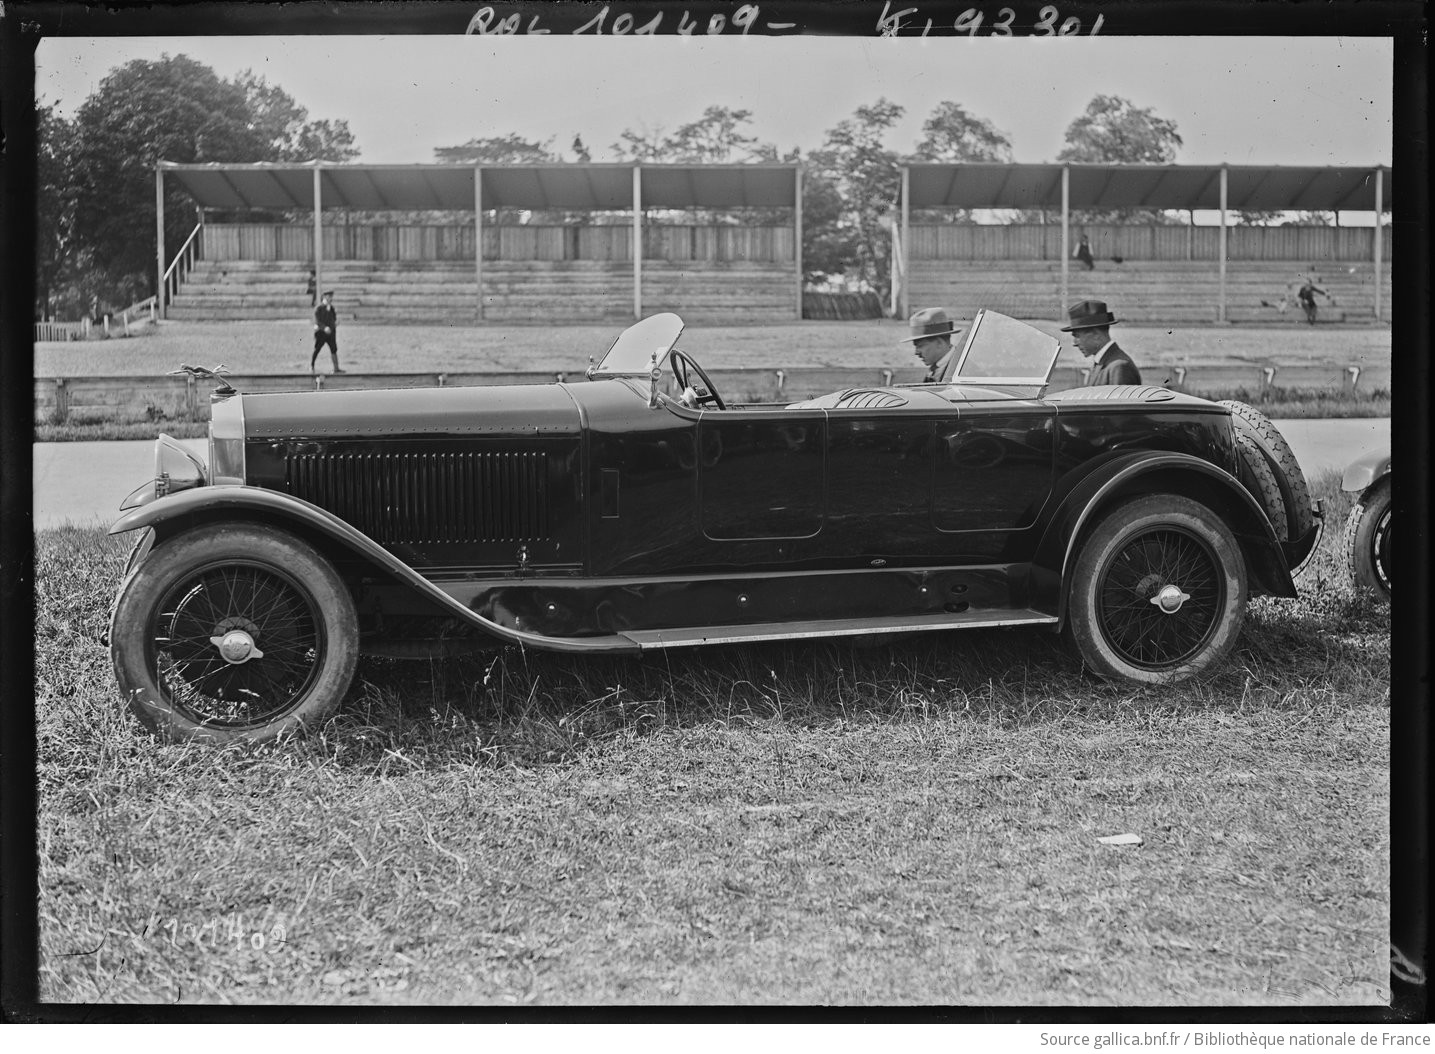 5/6/25, Parc des Princes, concours d'élégance, voiture Isotta-Fraschini (carrosserie Million-Guiet) carrossiers, [catégorie] torpedos plus de 2 places, 1925 : [photographie de presse] / [Agence Rol]